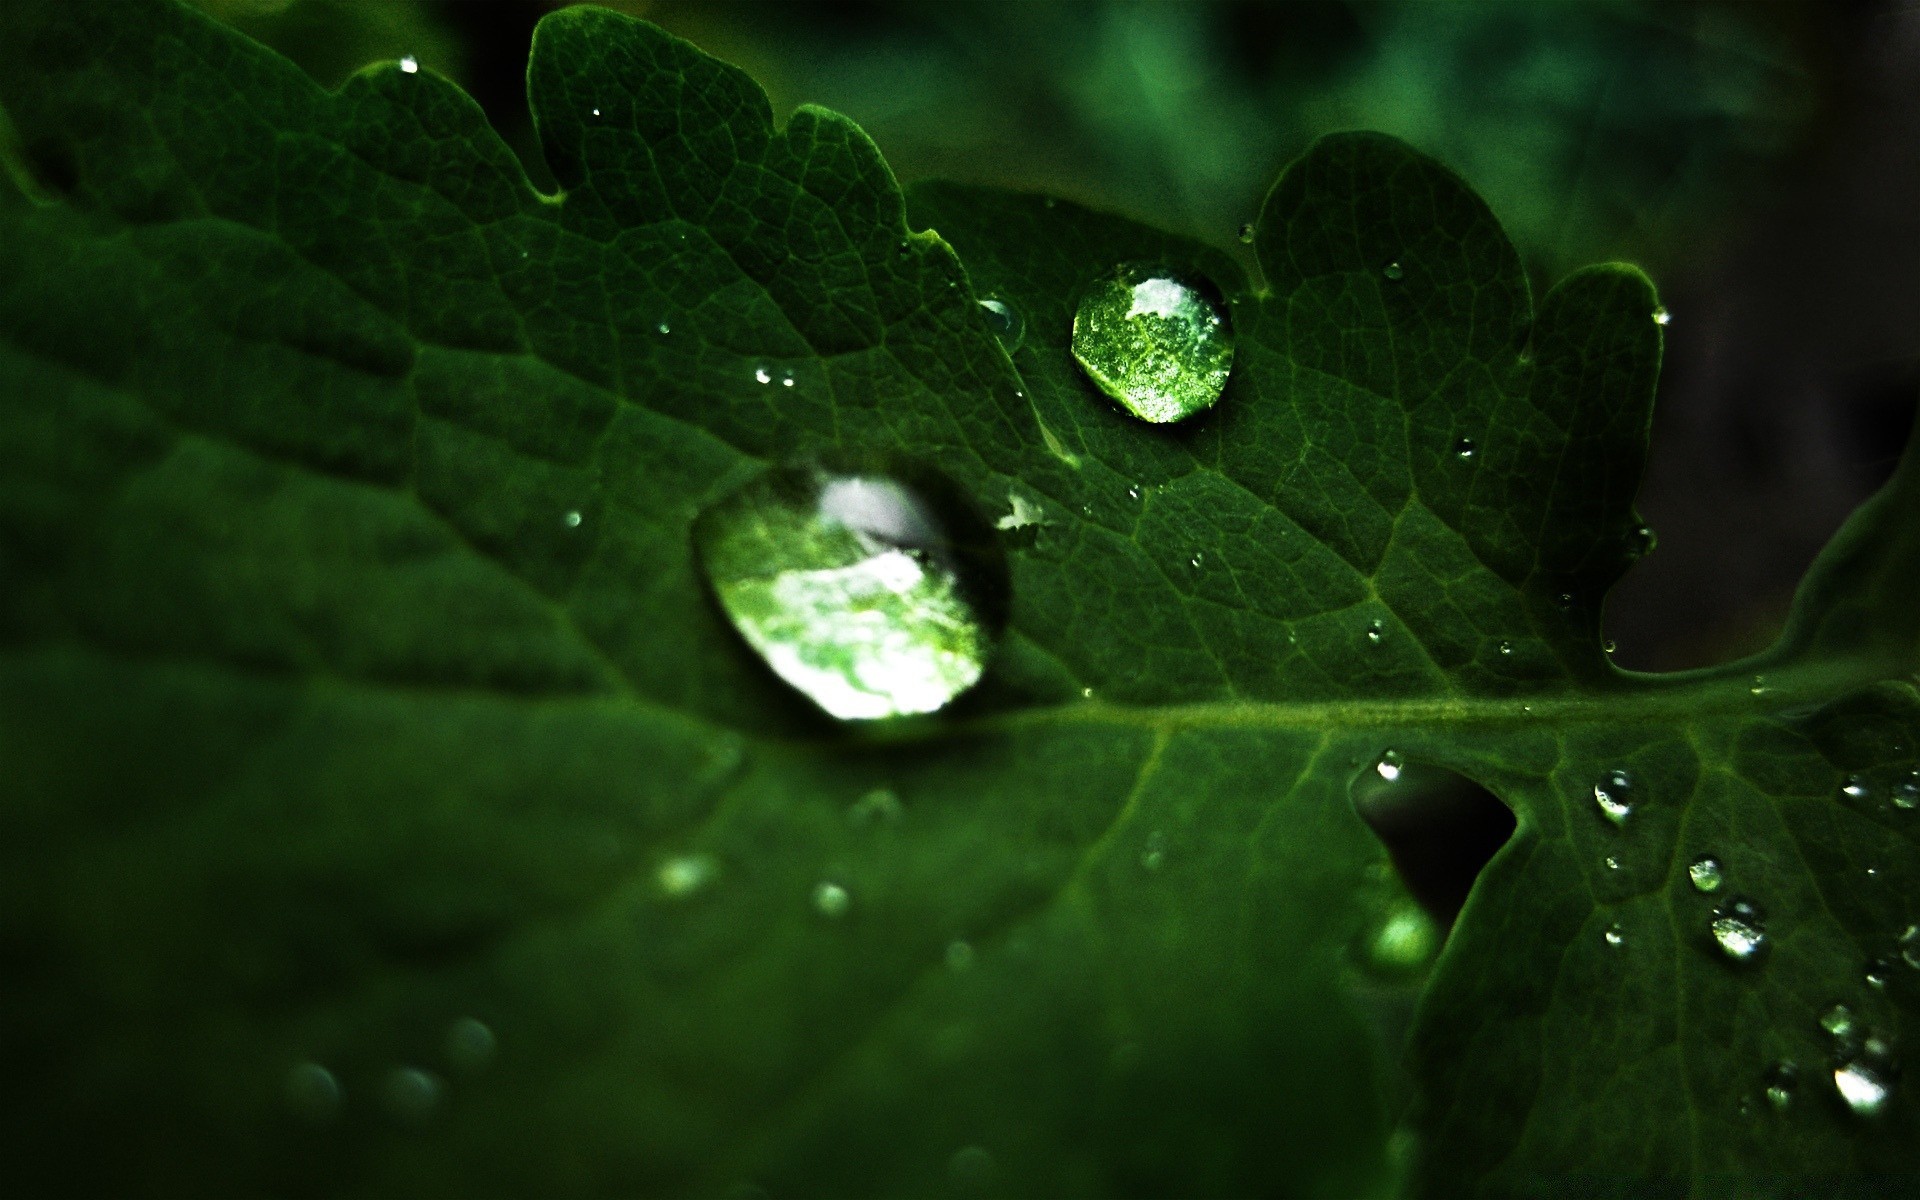 макросъемка дождь росы лист падение капли мокрый воды капли флора чистота природа рост сад лето свежесть водослива среды вены